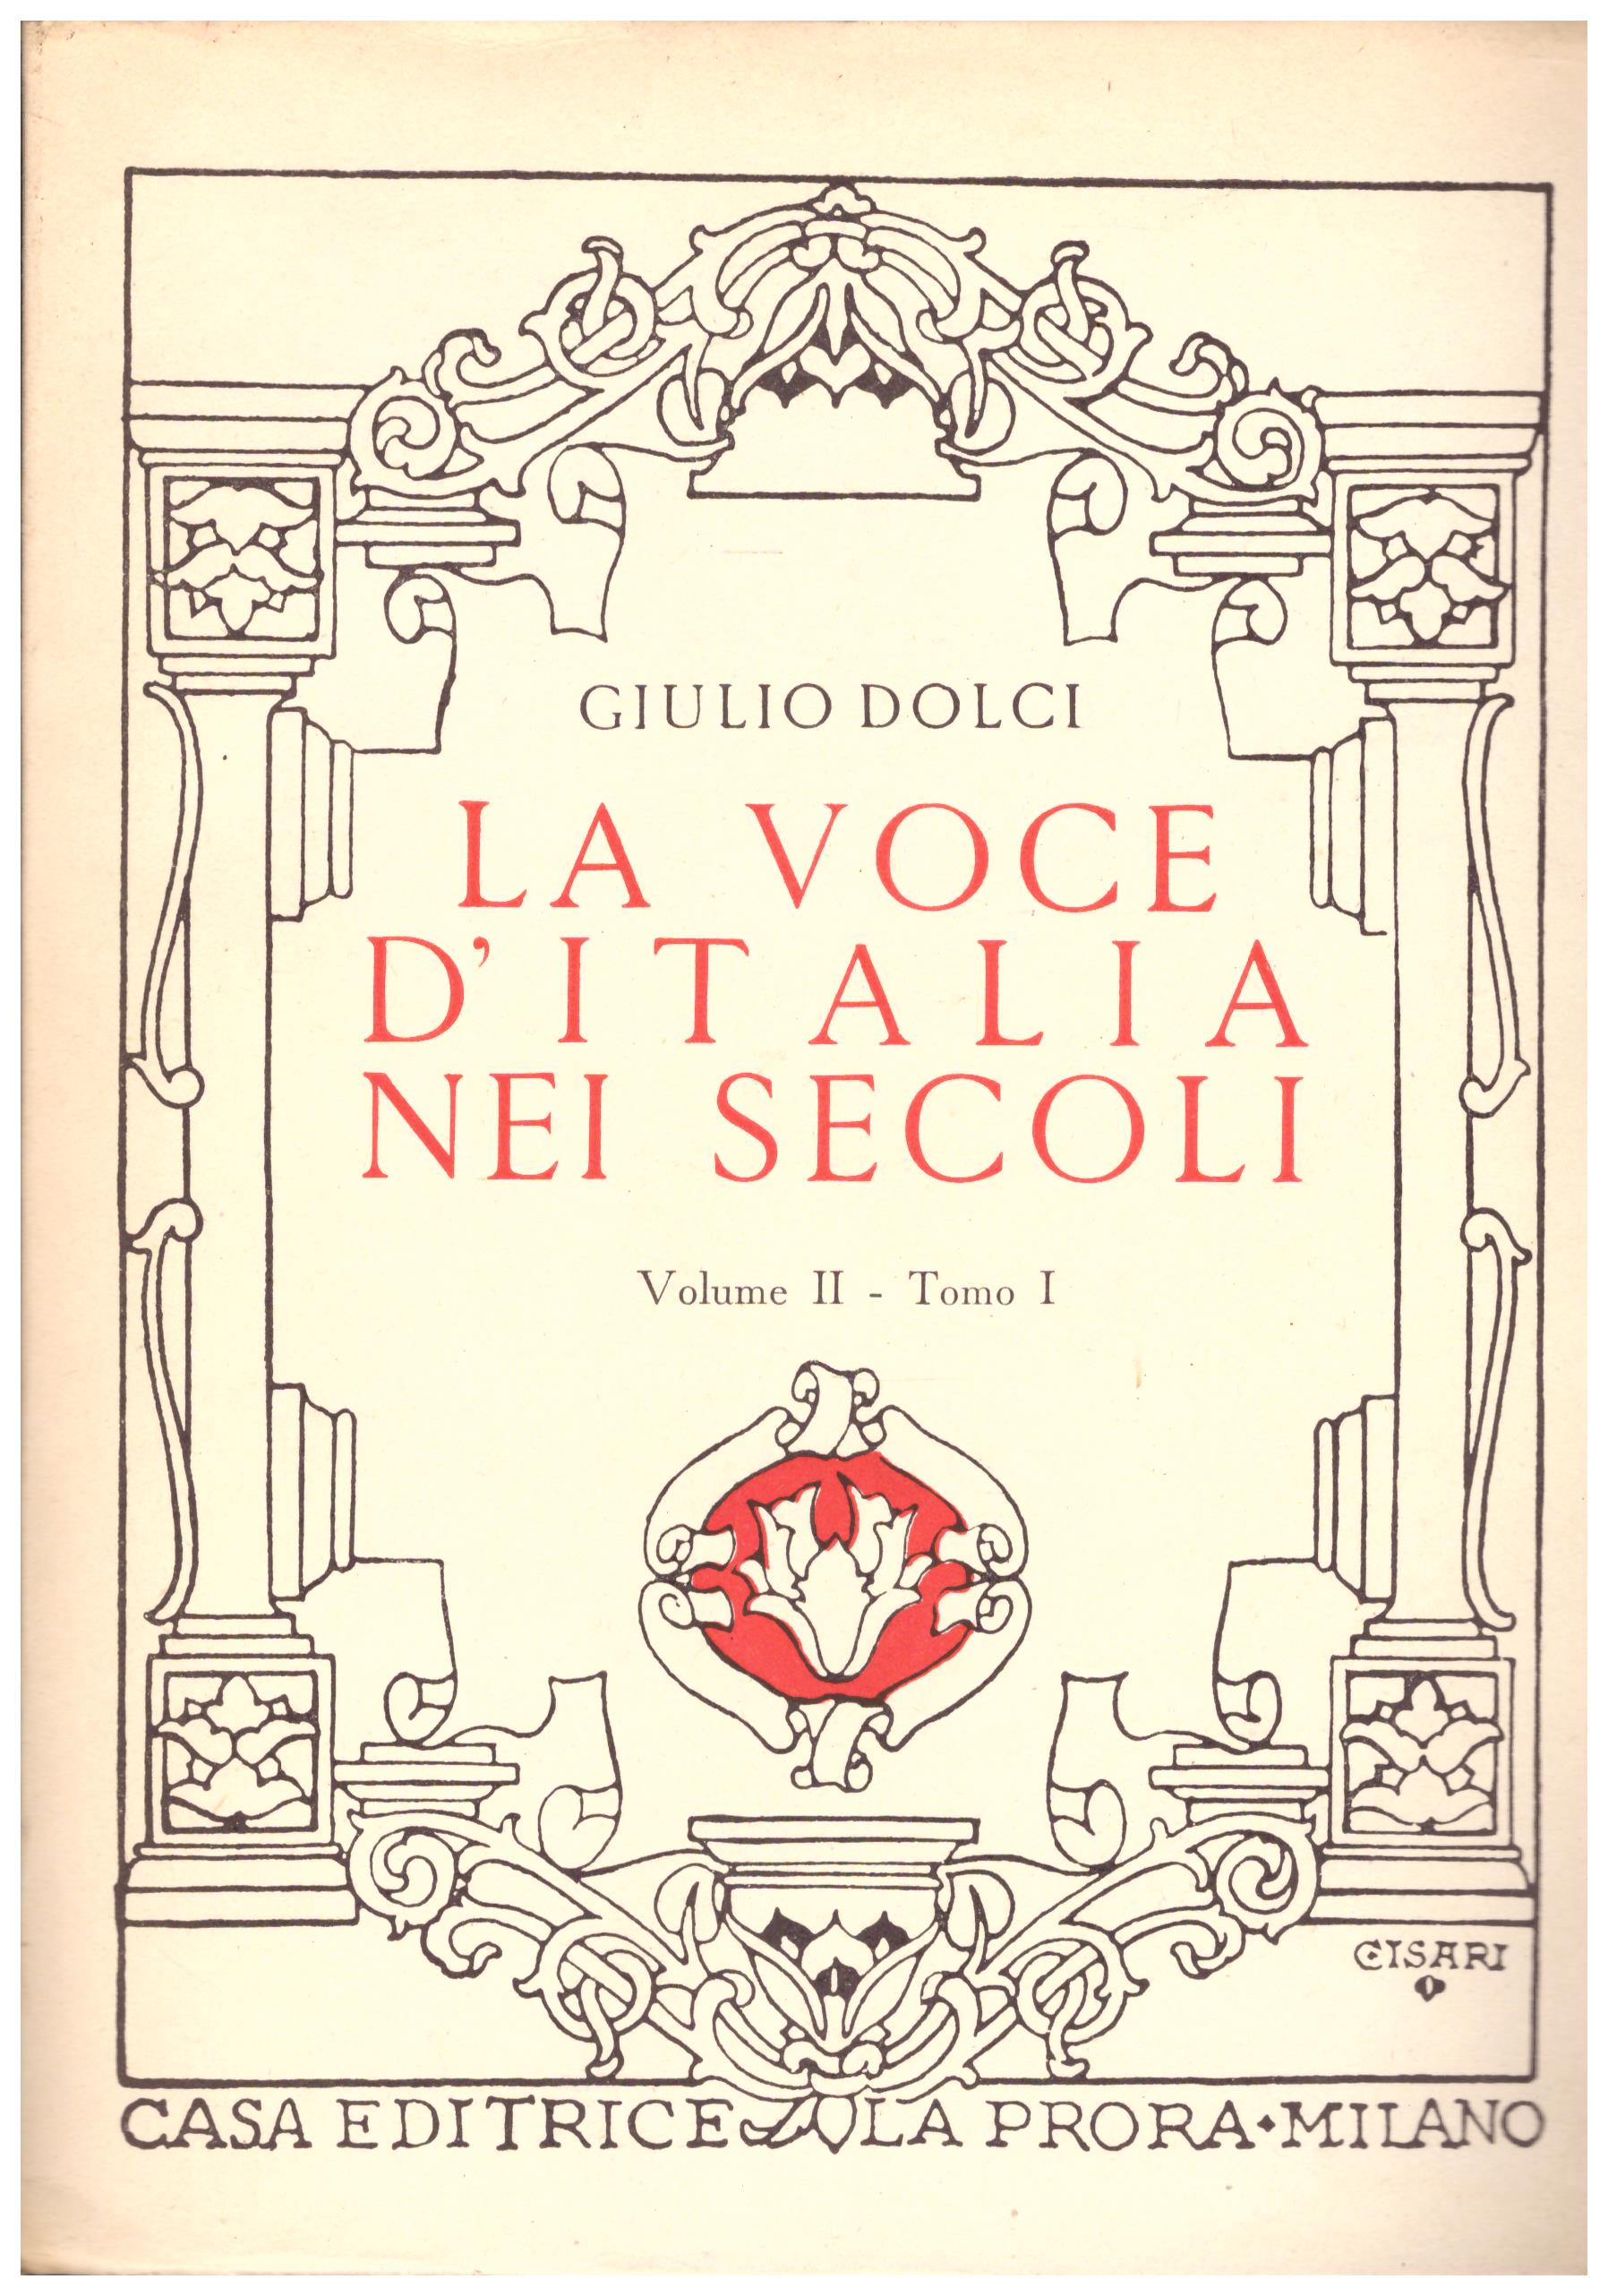 Titolo: La voce d'italia nei secoli volume II tomo I Autore: Giulio Dolci Editore: la prora, Milano 1952